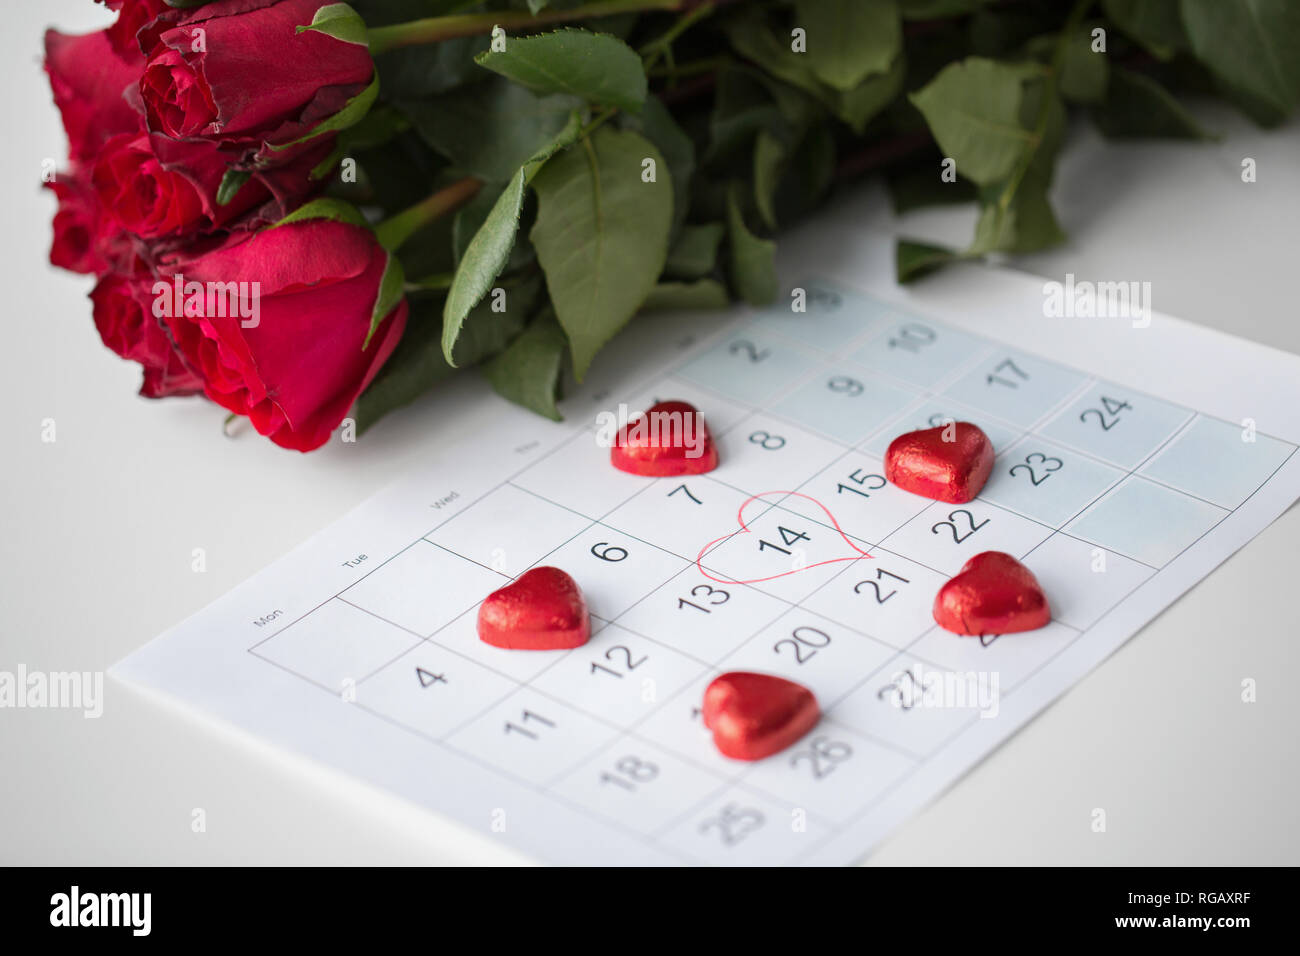 Close up of calendar, le coeur, les bonbons et les roses rouges Banque D'Images